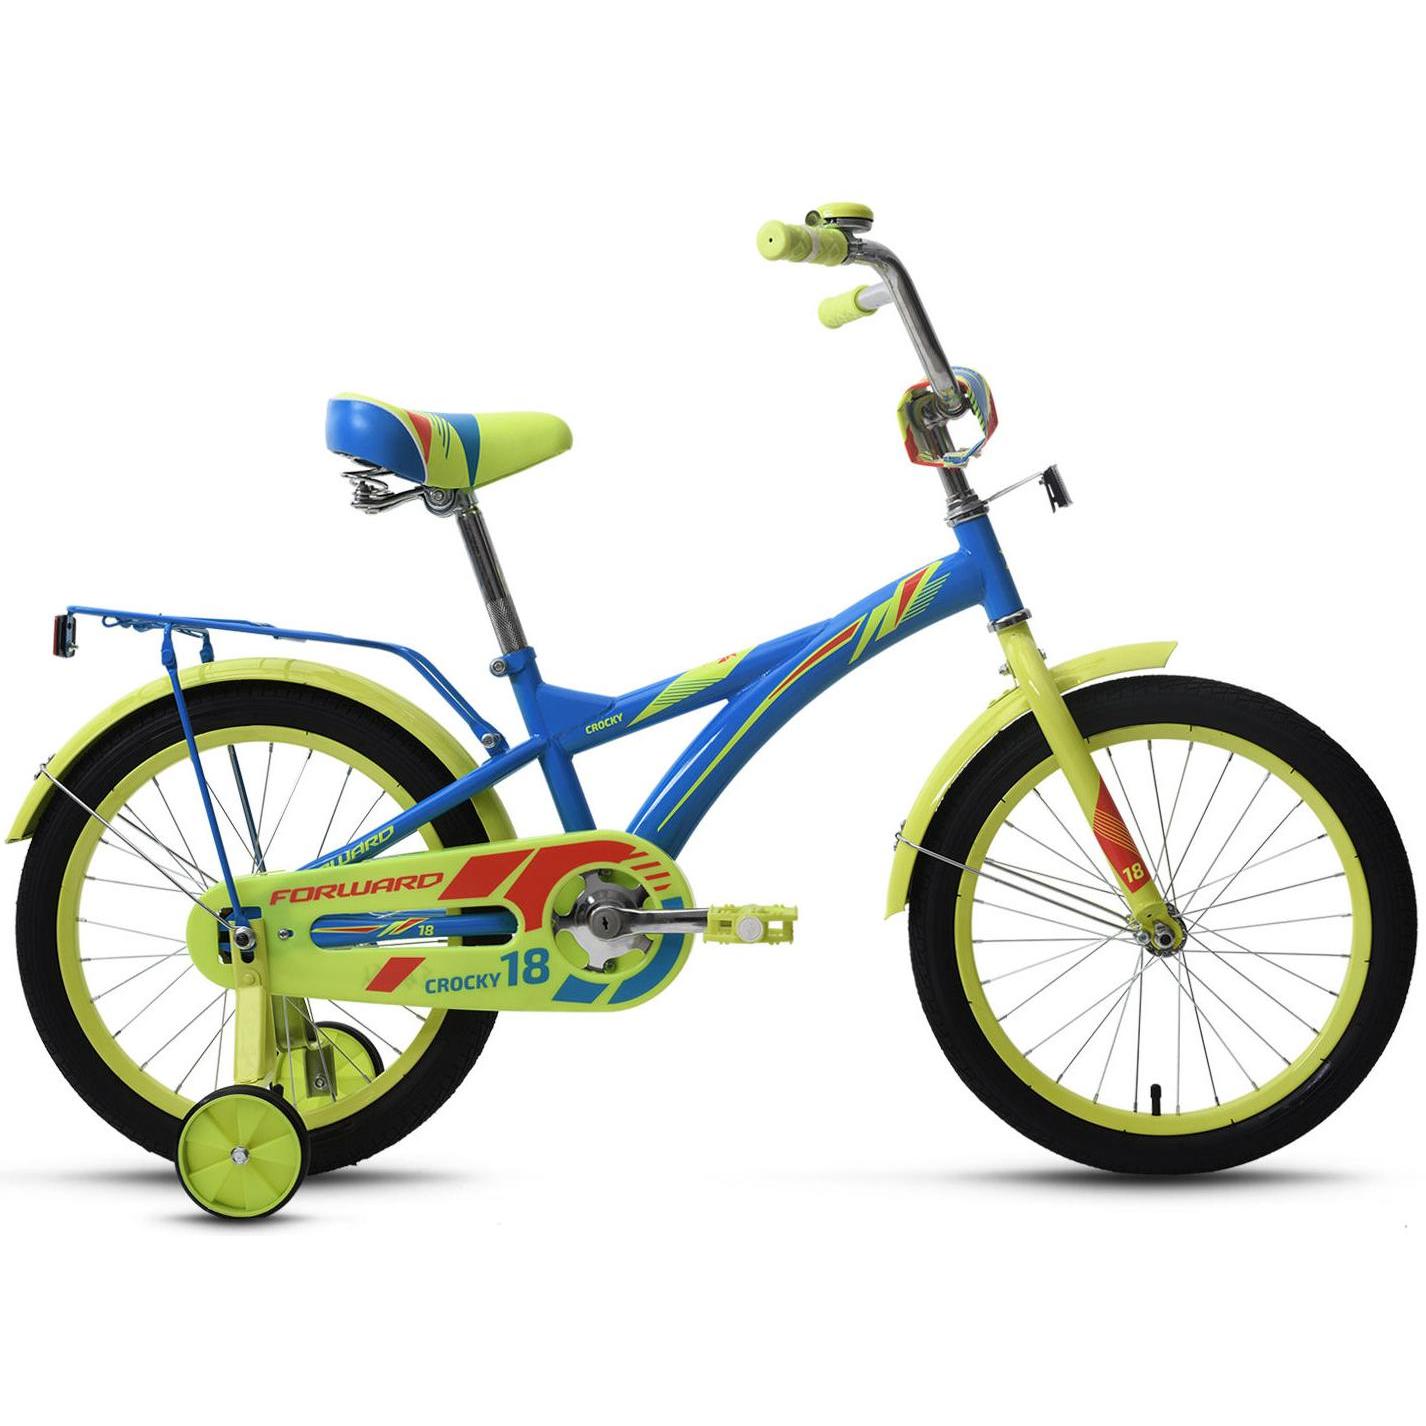 Велосипед Forward Crocky 18 2019 Синий